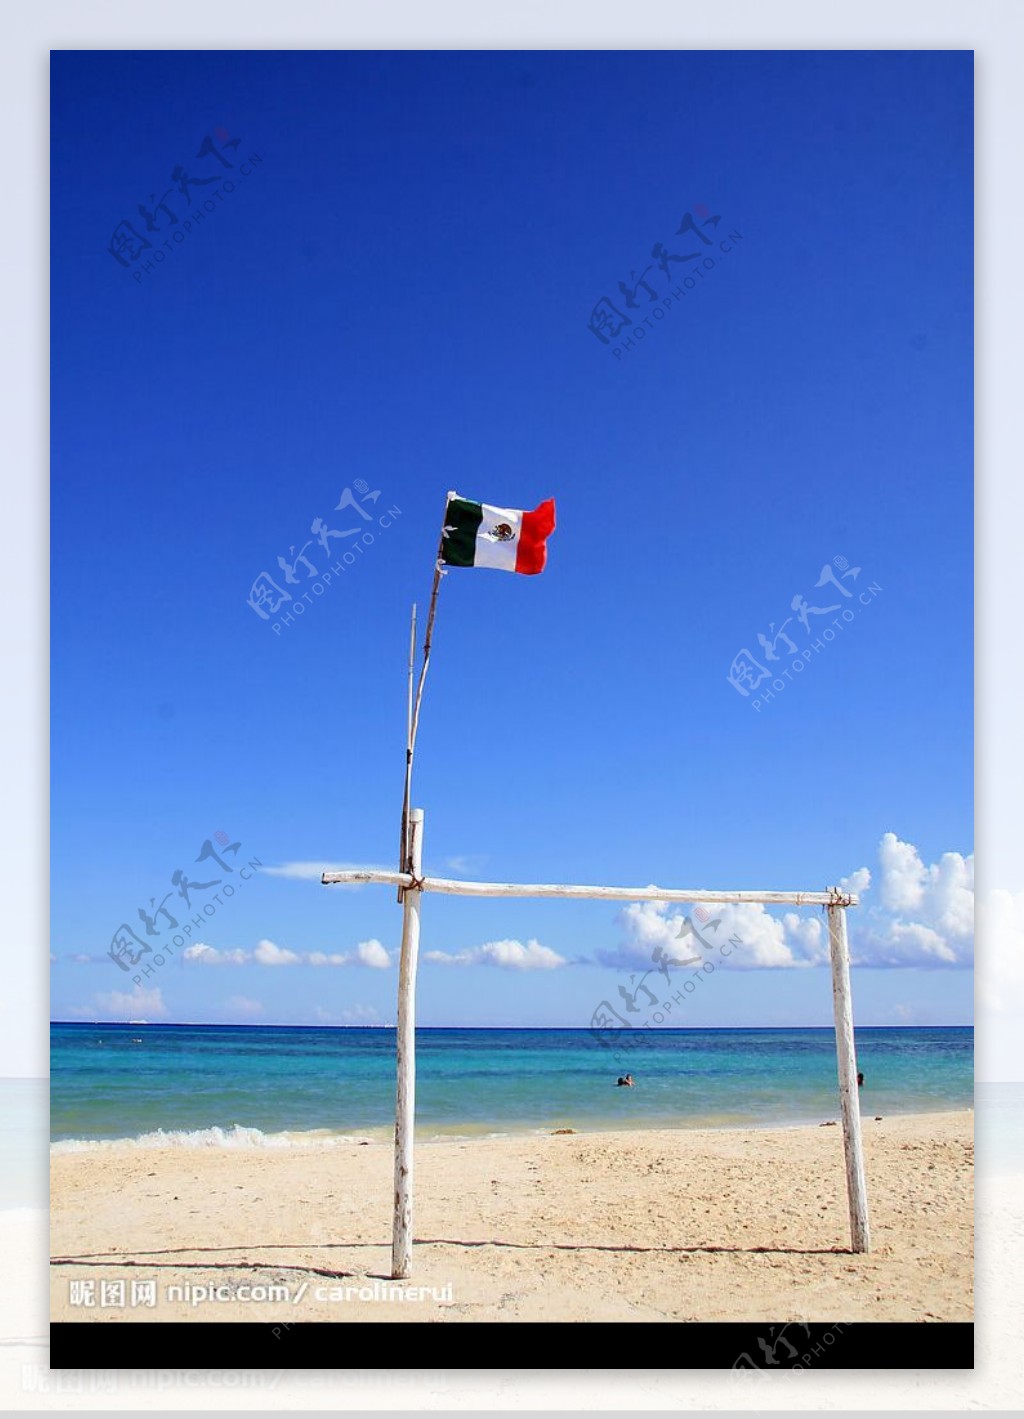 墨西哥国旗图片